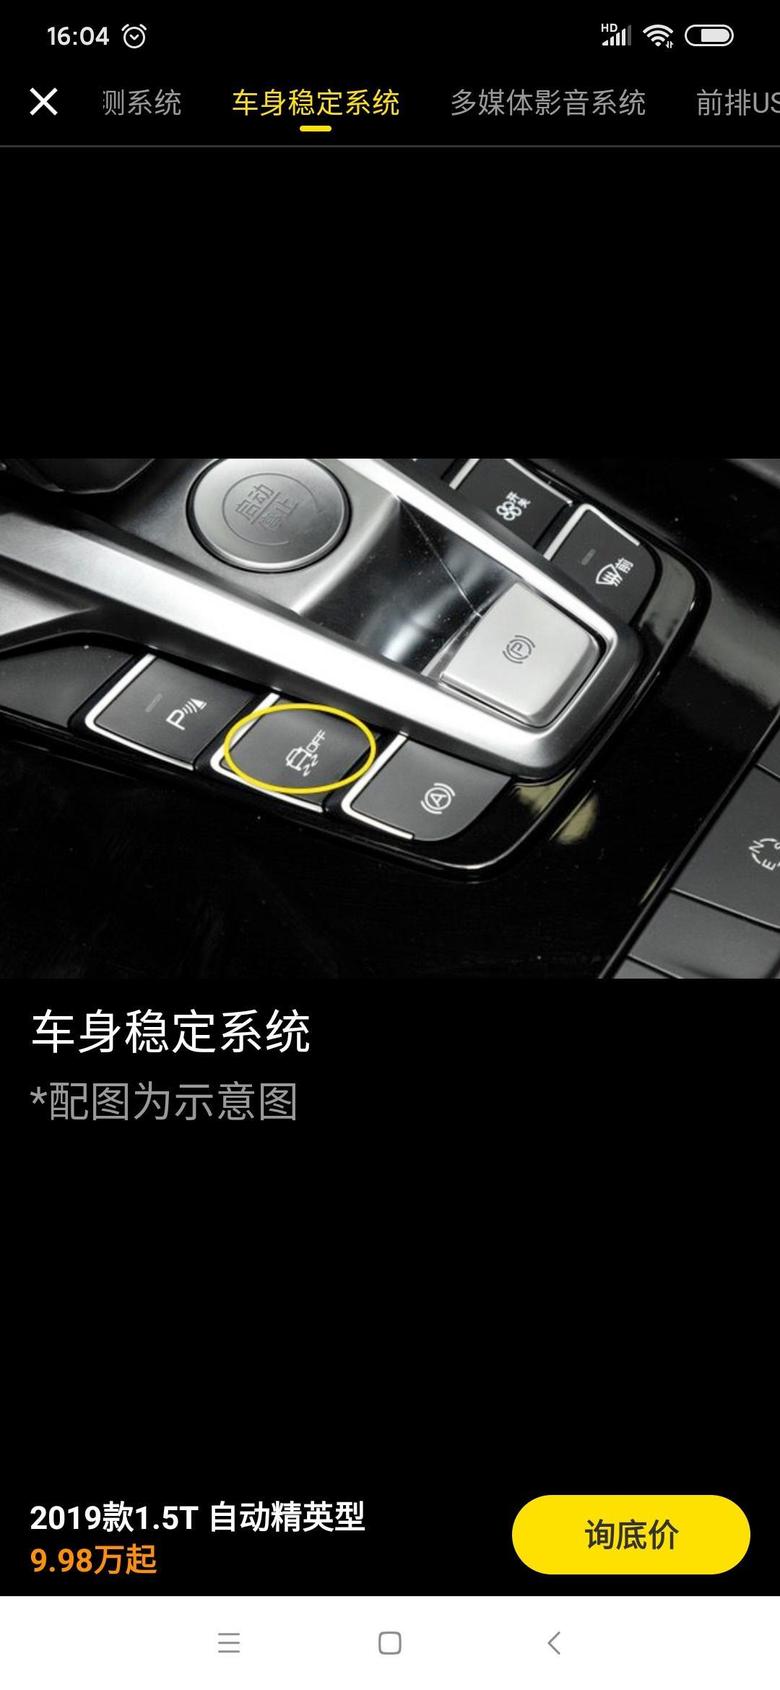 宋pro图片中p键是干嘛的，行车时p键指示灯亮是正常吗？